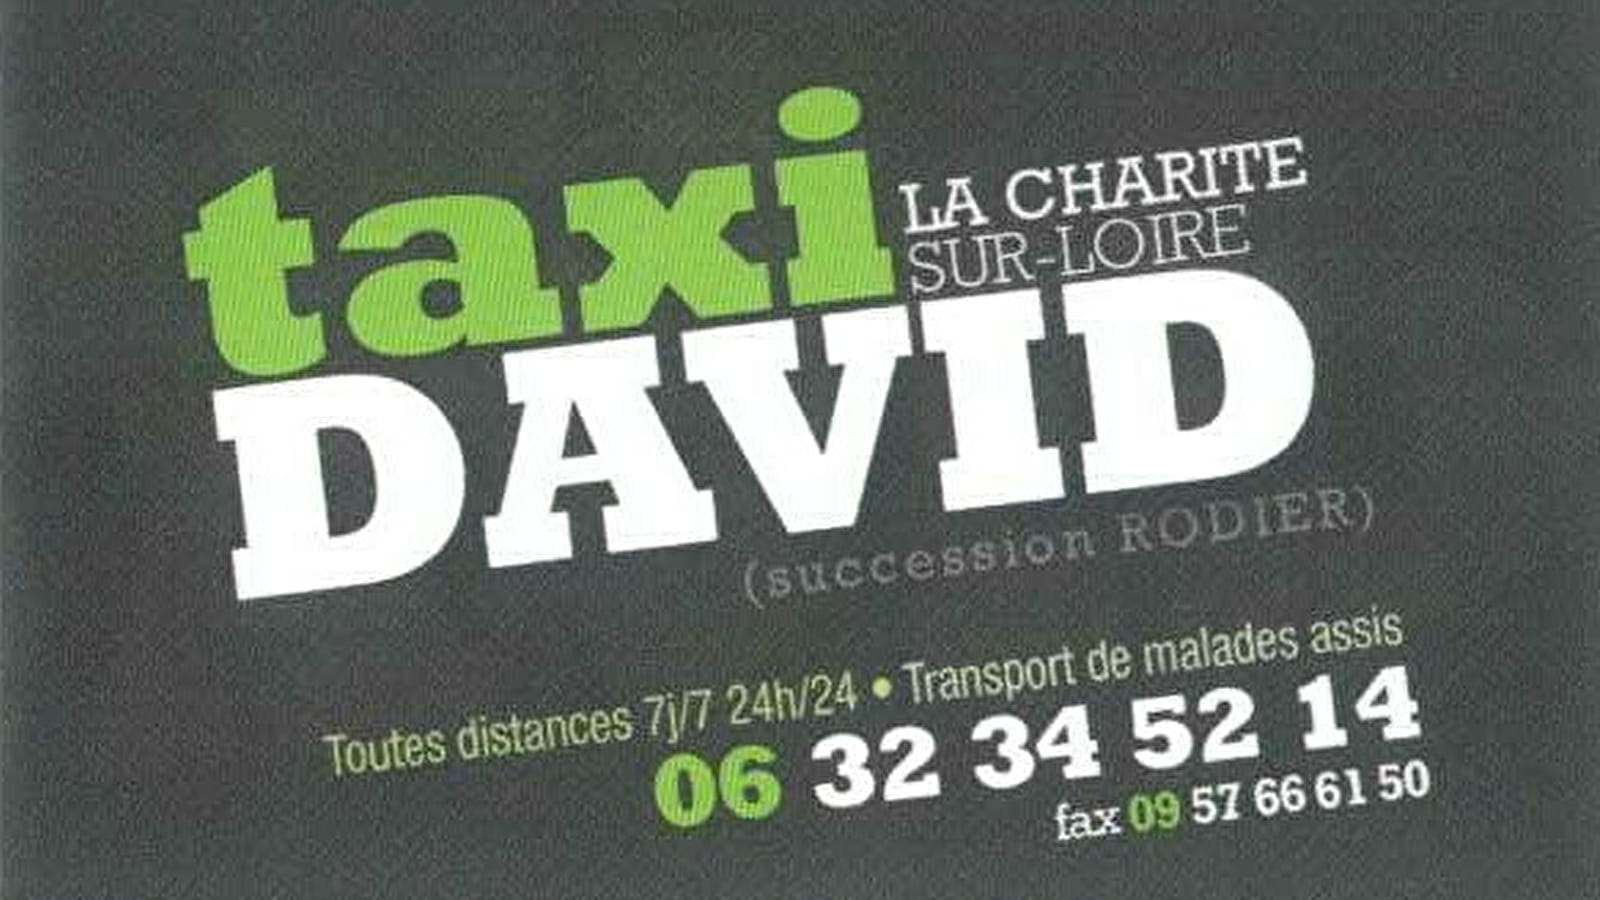 Taxi David